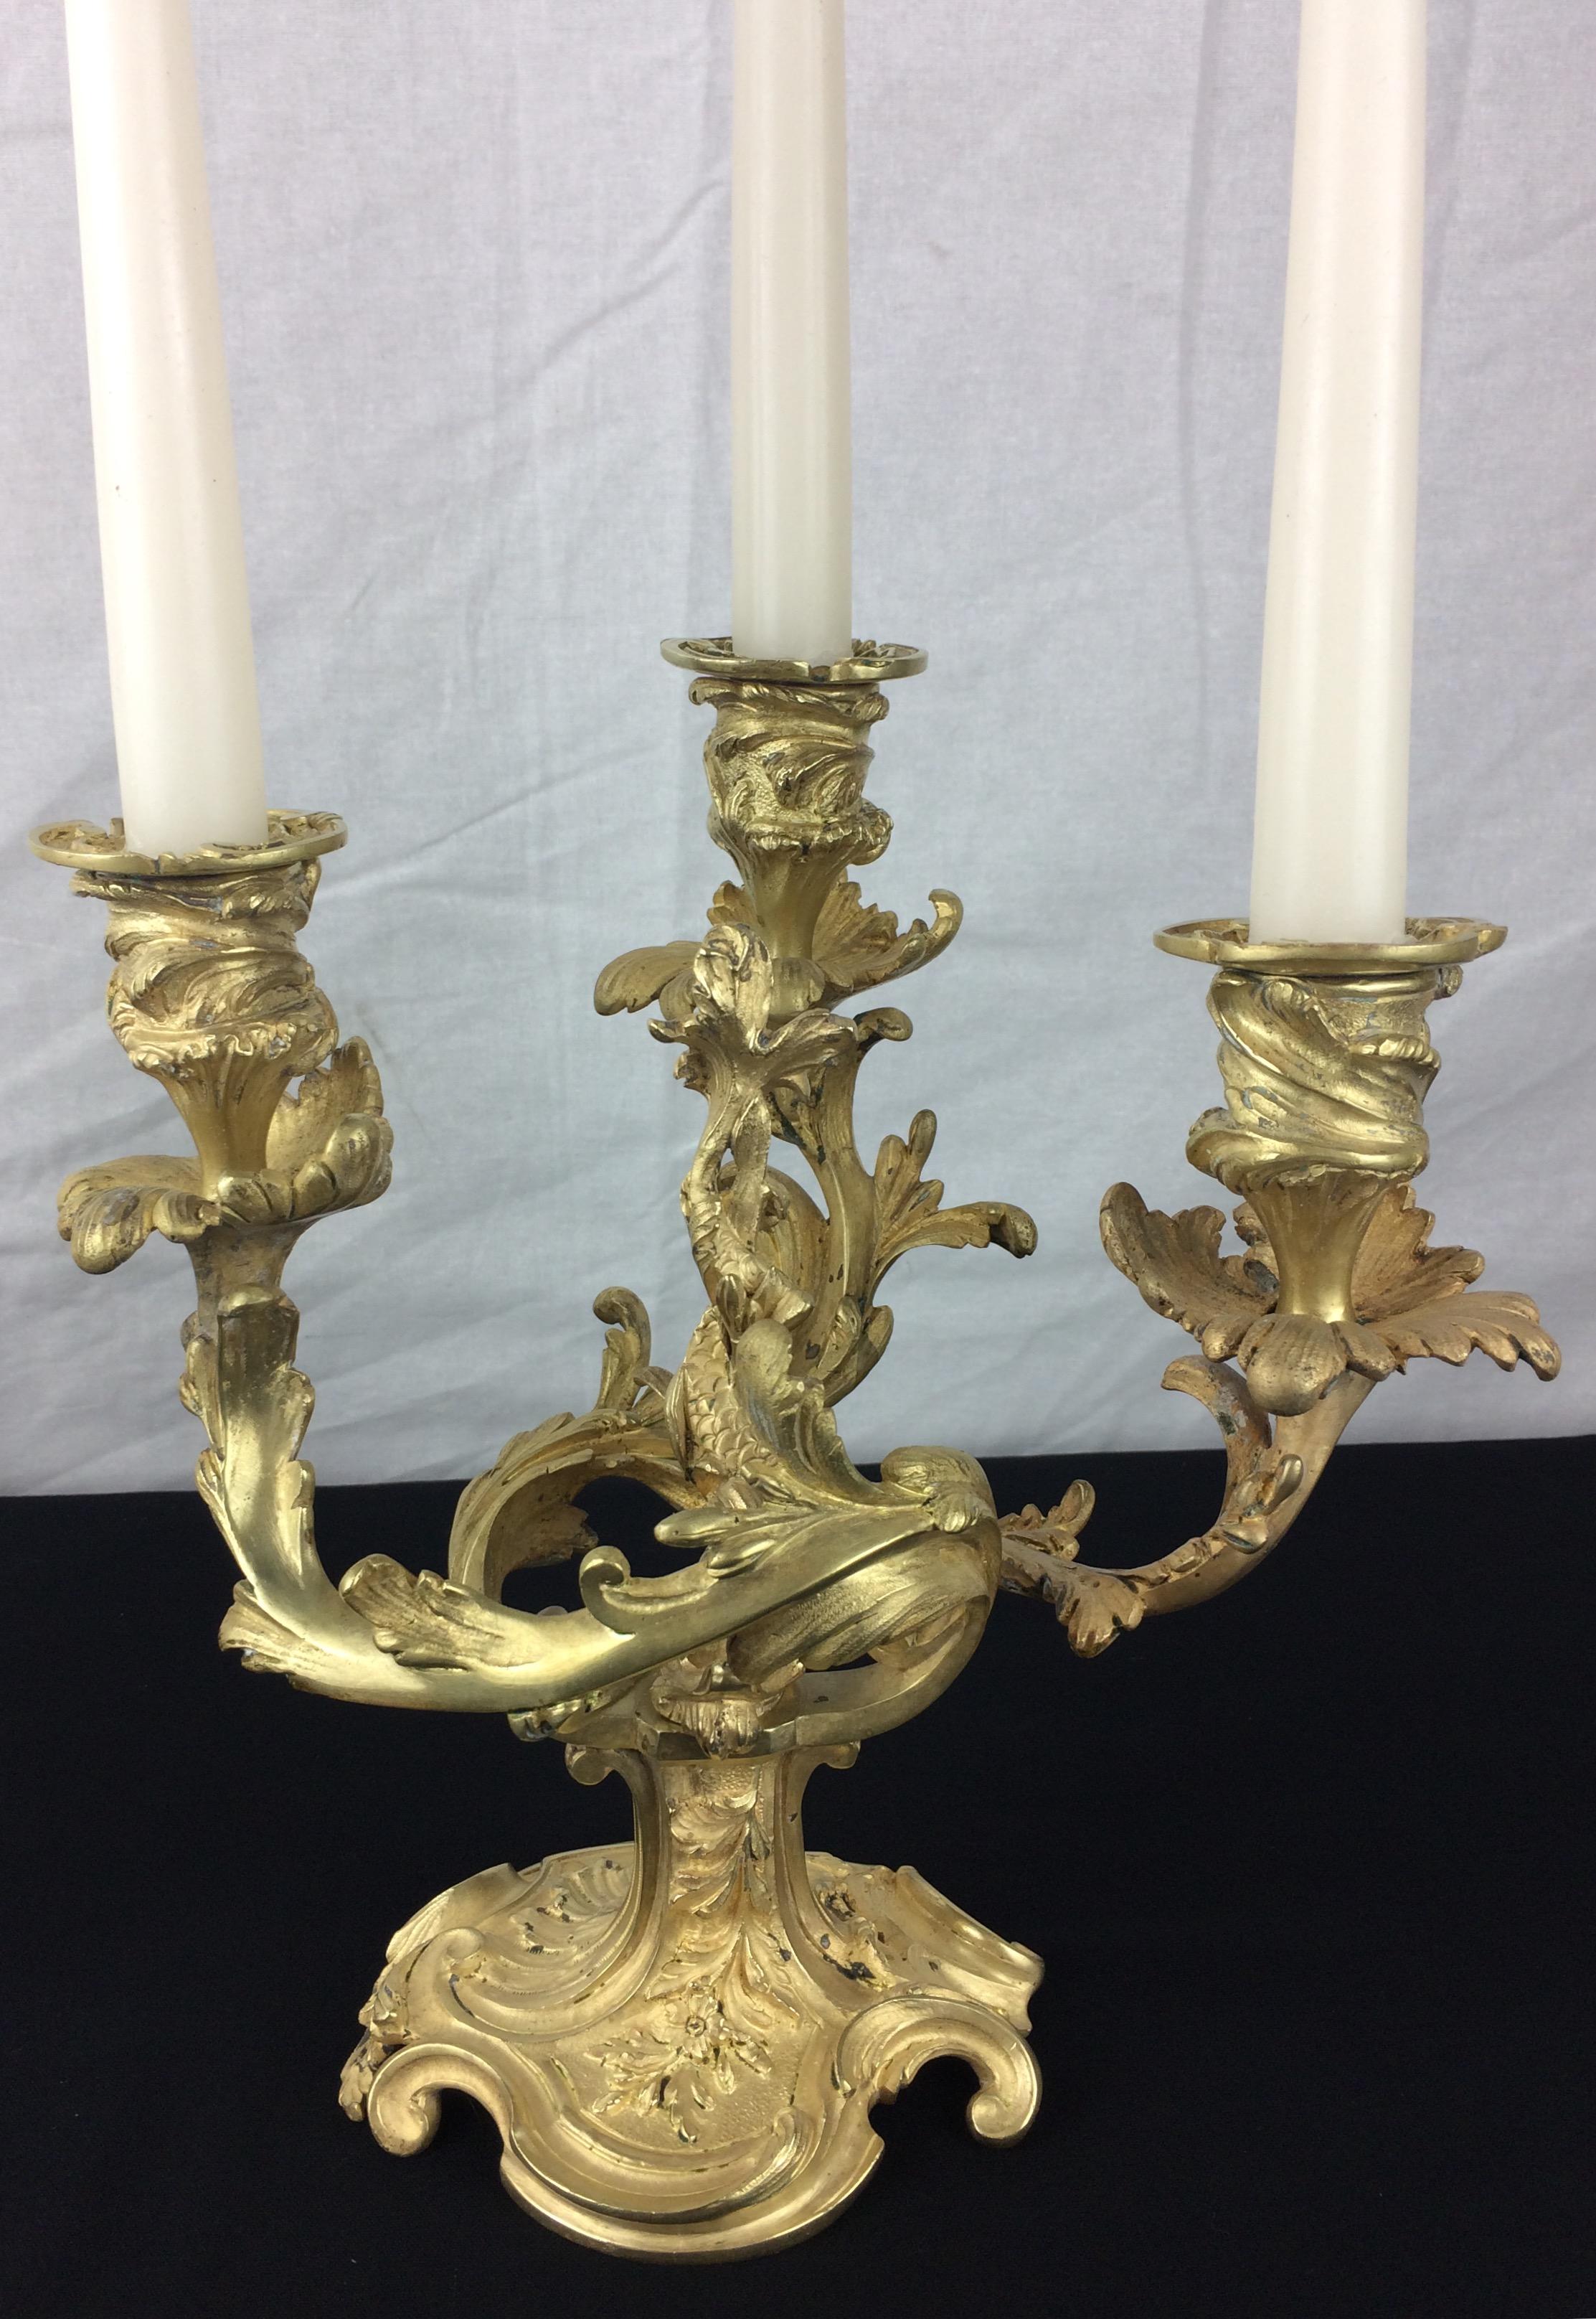 Une très belle paire de candélabres en bronze français du 19ème siècle dans le style Napoléon III.  Dorure d'origine sur ces beaux candélabres en bronze rocaille ou rococo. 

Les détails typiques de Napoléon III sont captivants, voir les photos